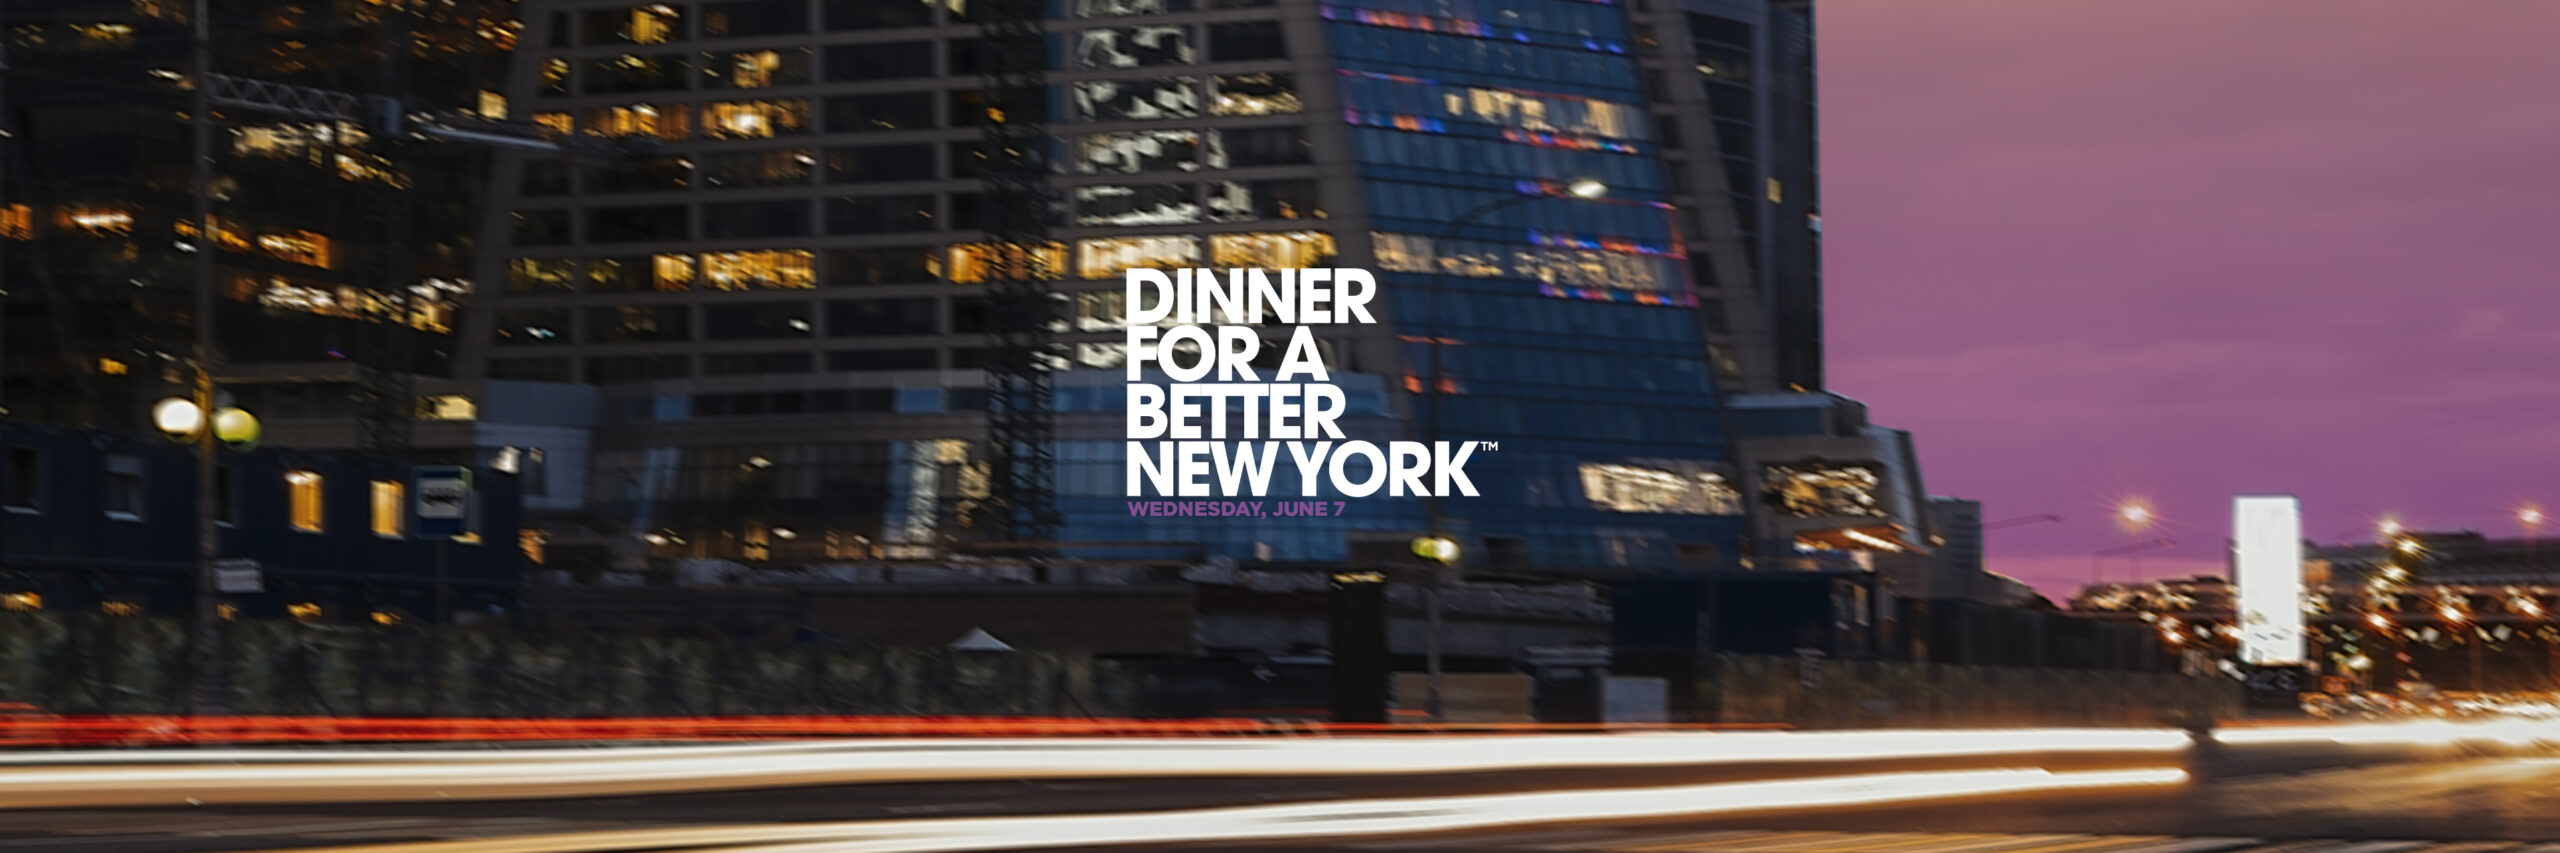 Dinner for a Better New York